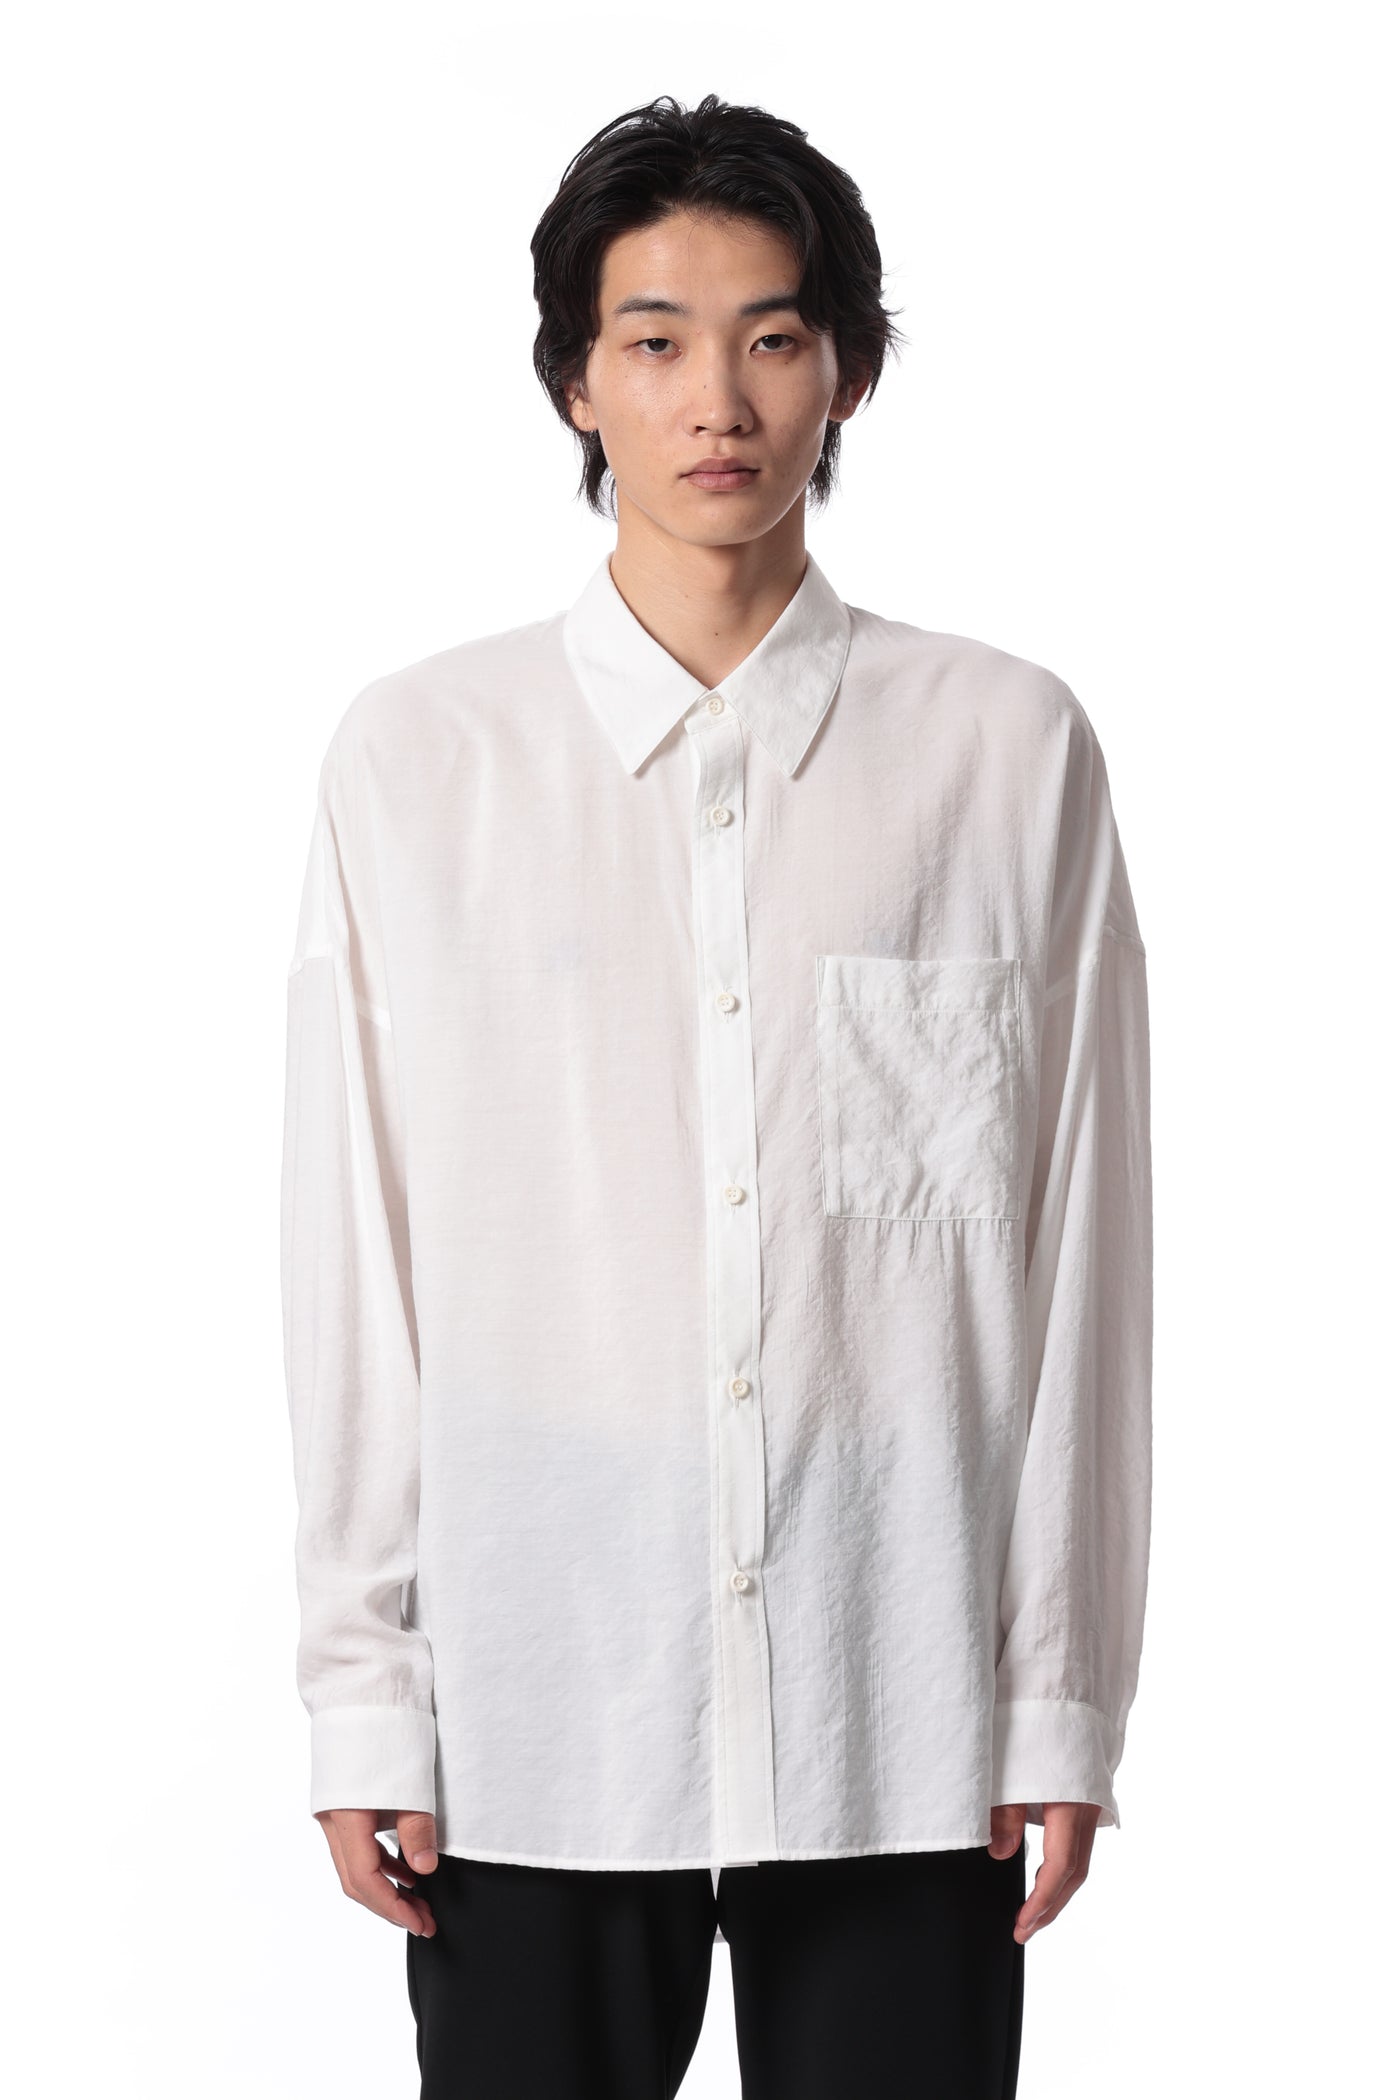 AS41-012 レーヨン/ナイロンローン オーバーサイズシャツ